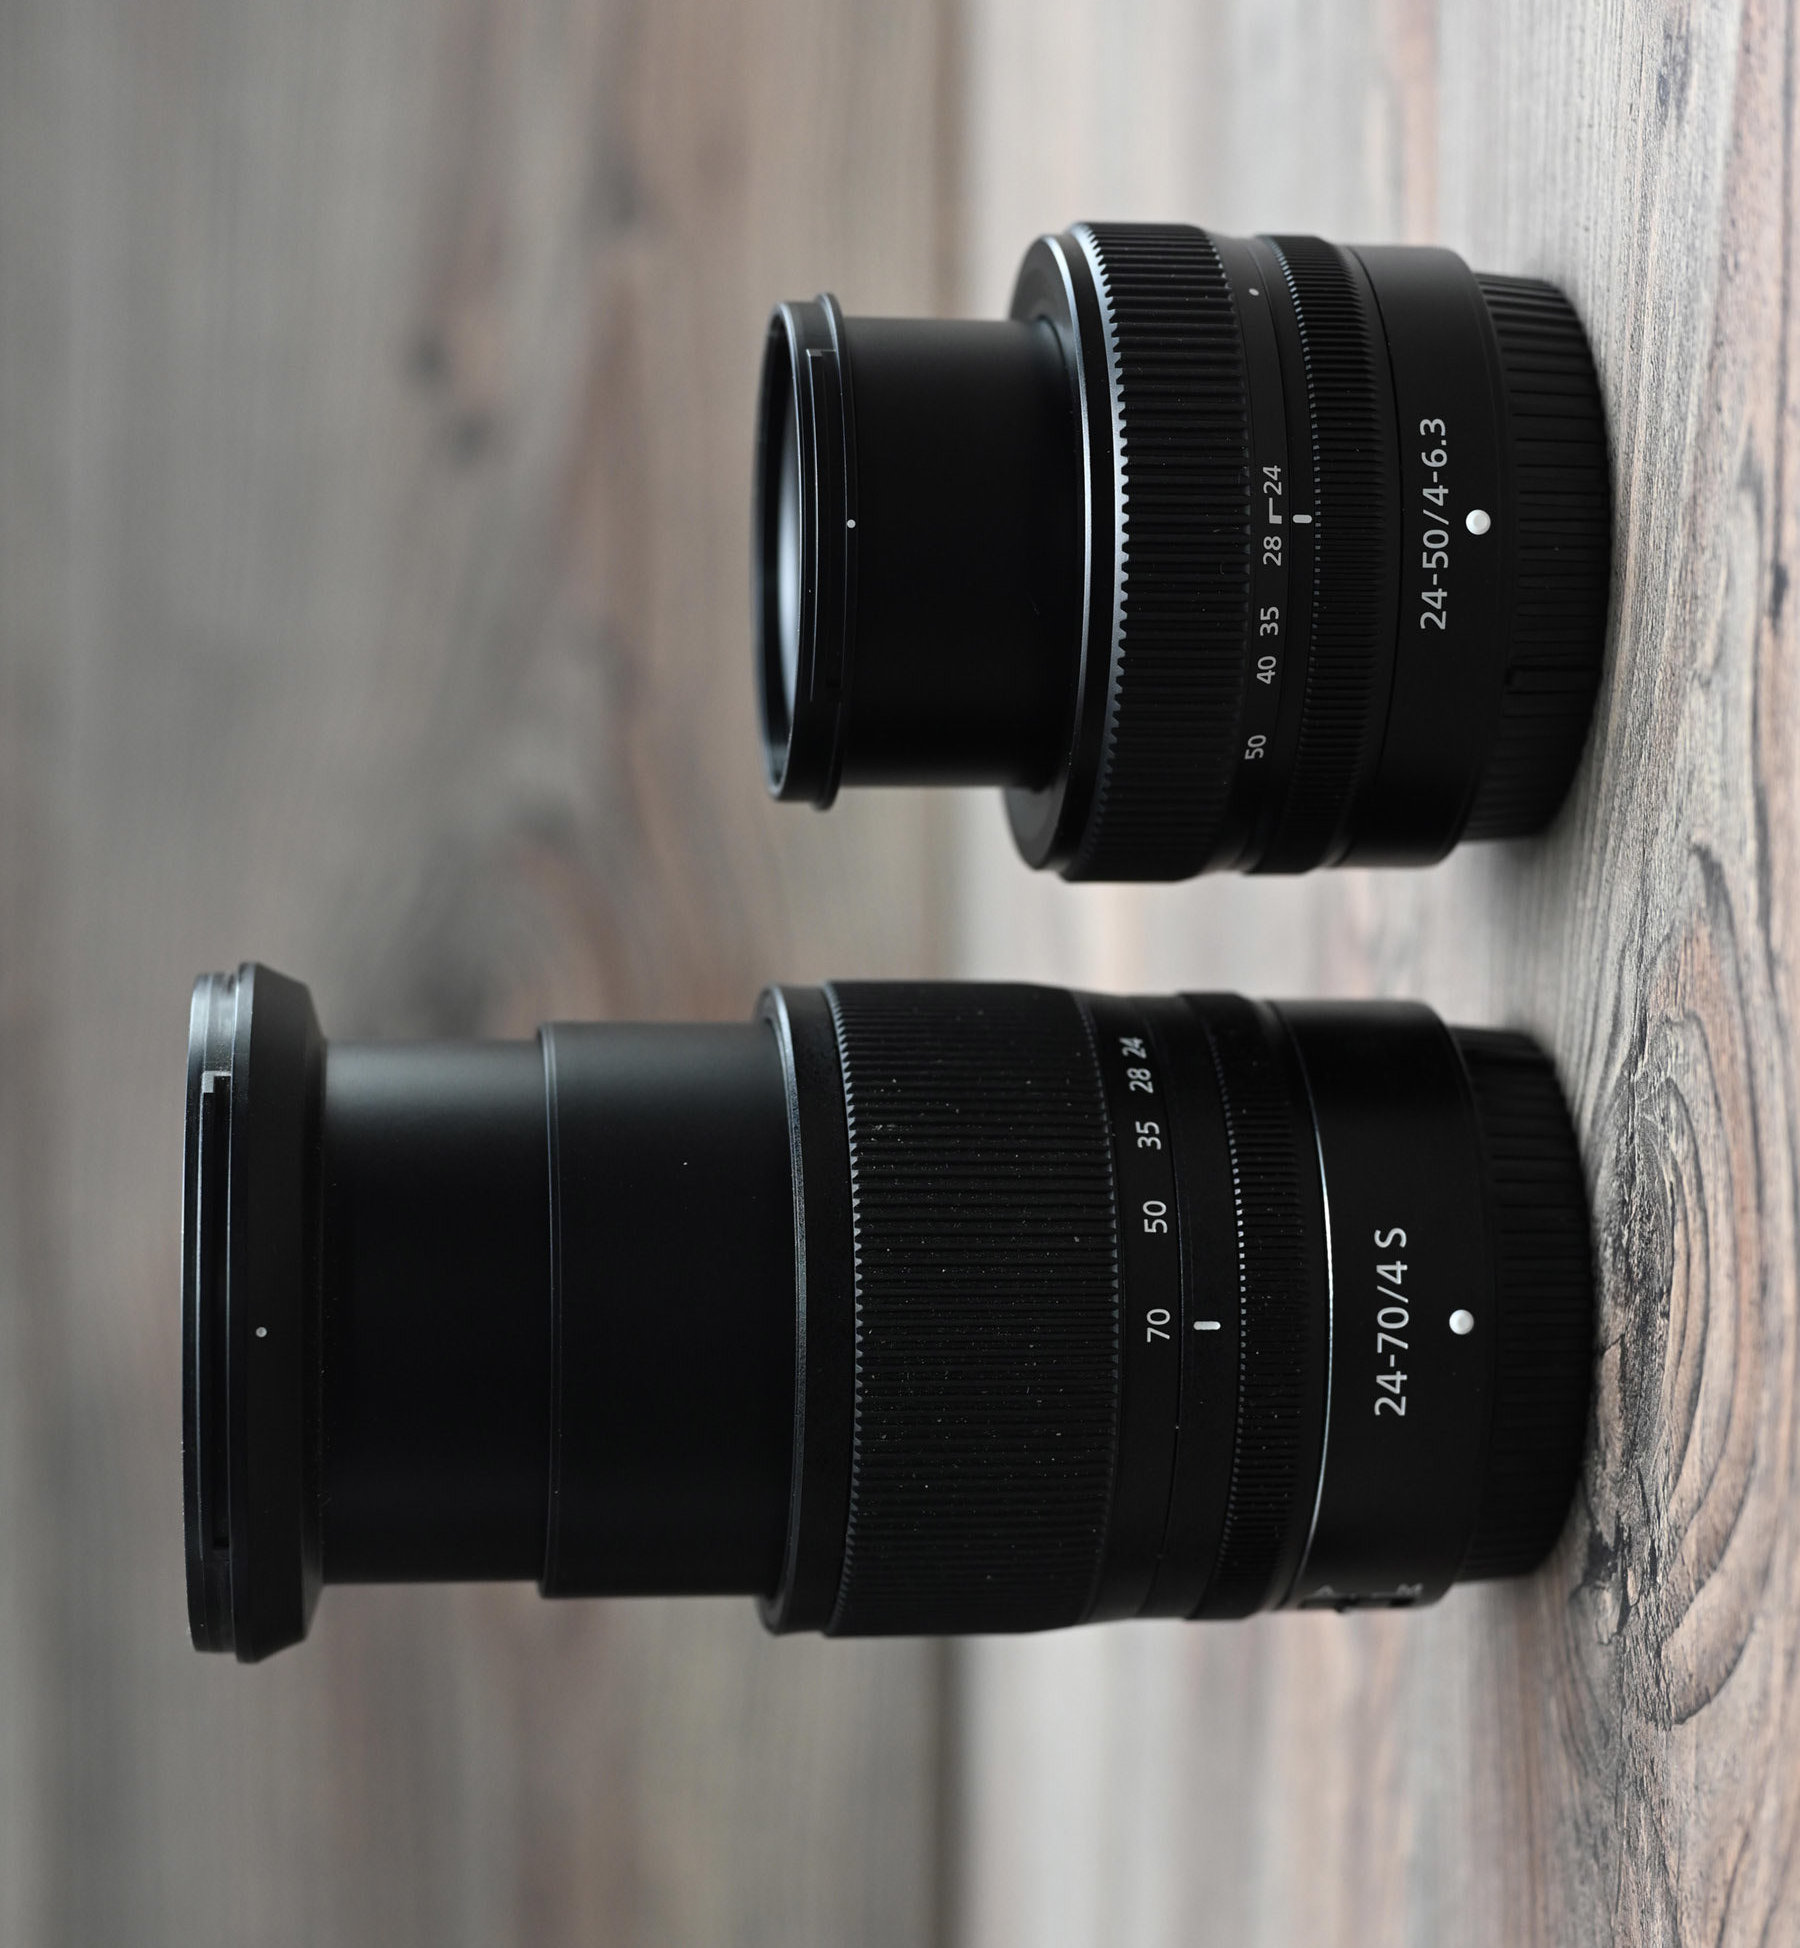 Maggiori informazioni su "Nikon Z5 : la compro ma con quali obiettivi ?"